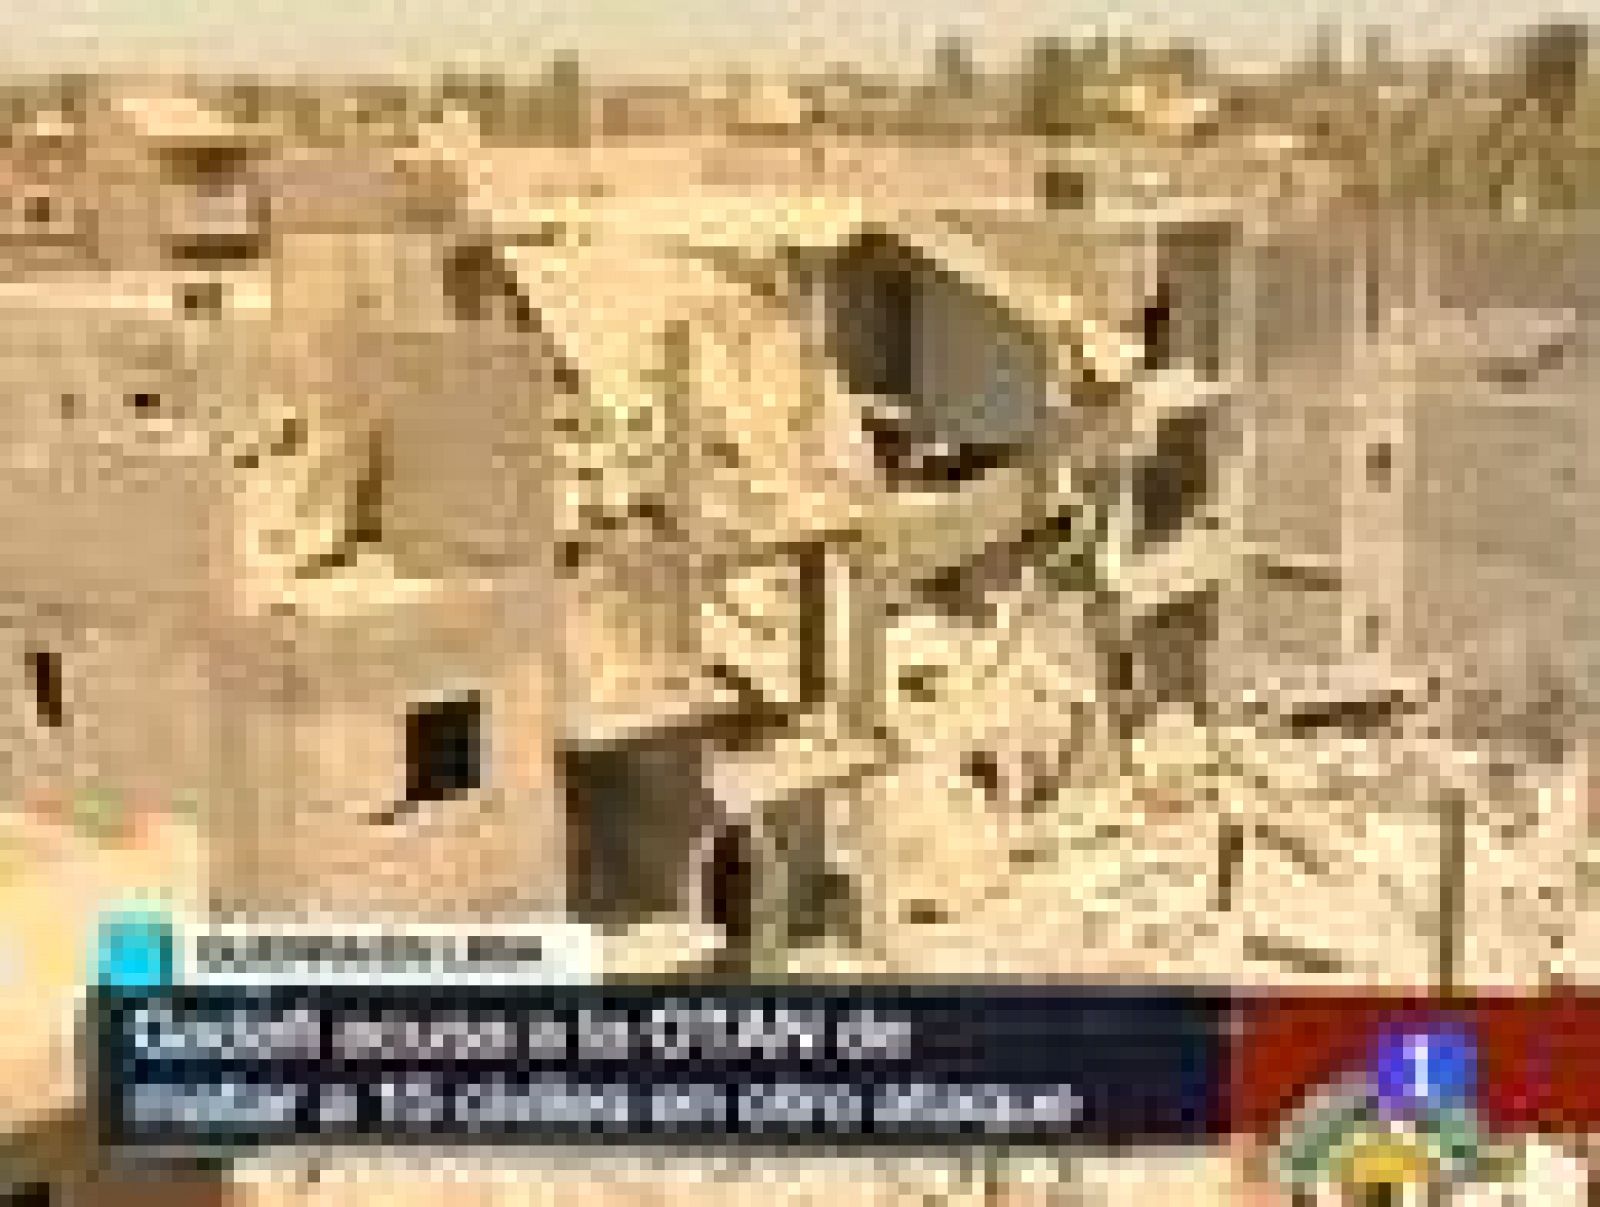  El gobierno de Gadafi ha acusado a la OTAN de matar a 15 personas en un bombardeo al oeste de Trípoli. La Alianza reconoce que ha realizado un ataque en esa zona pero mantiene que iba dirigido contra un centro de mando y control del ejército del rég